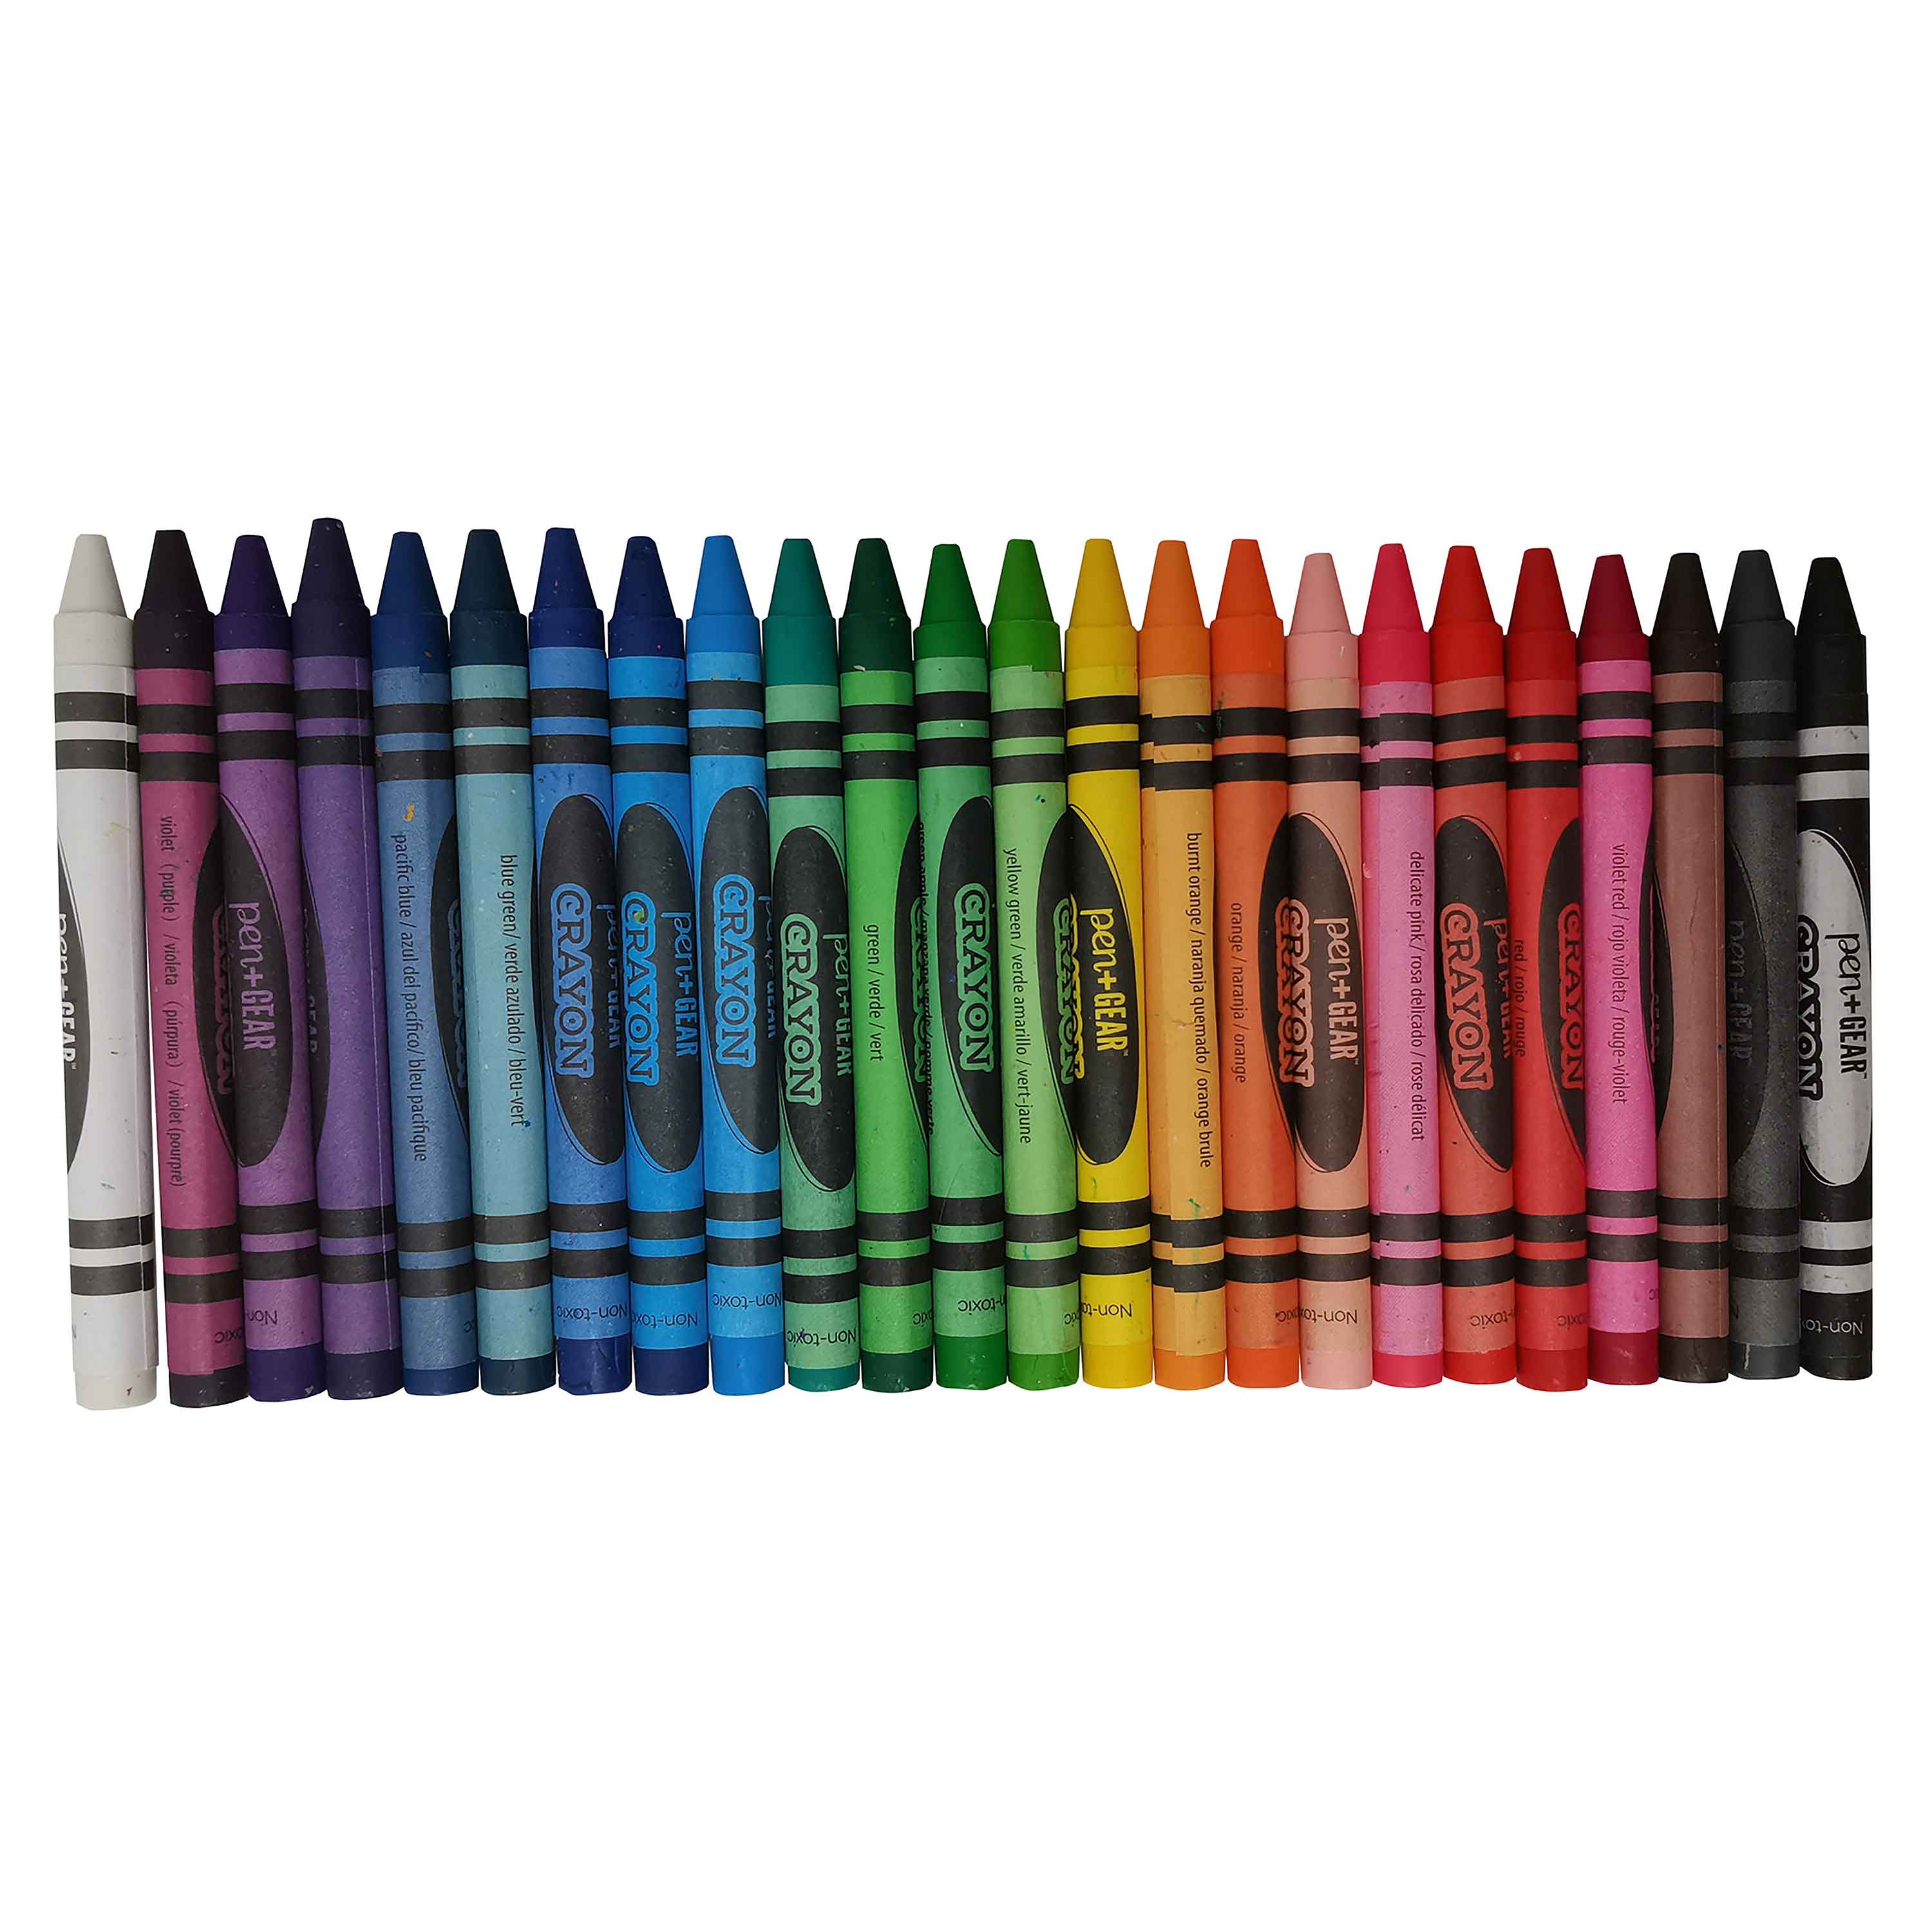 Crayones-de-cera-Pen-Gear-caja-24-uds-1-80820